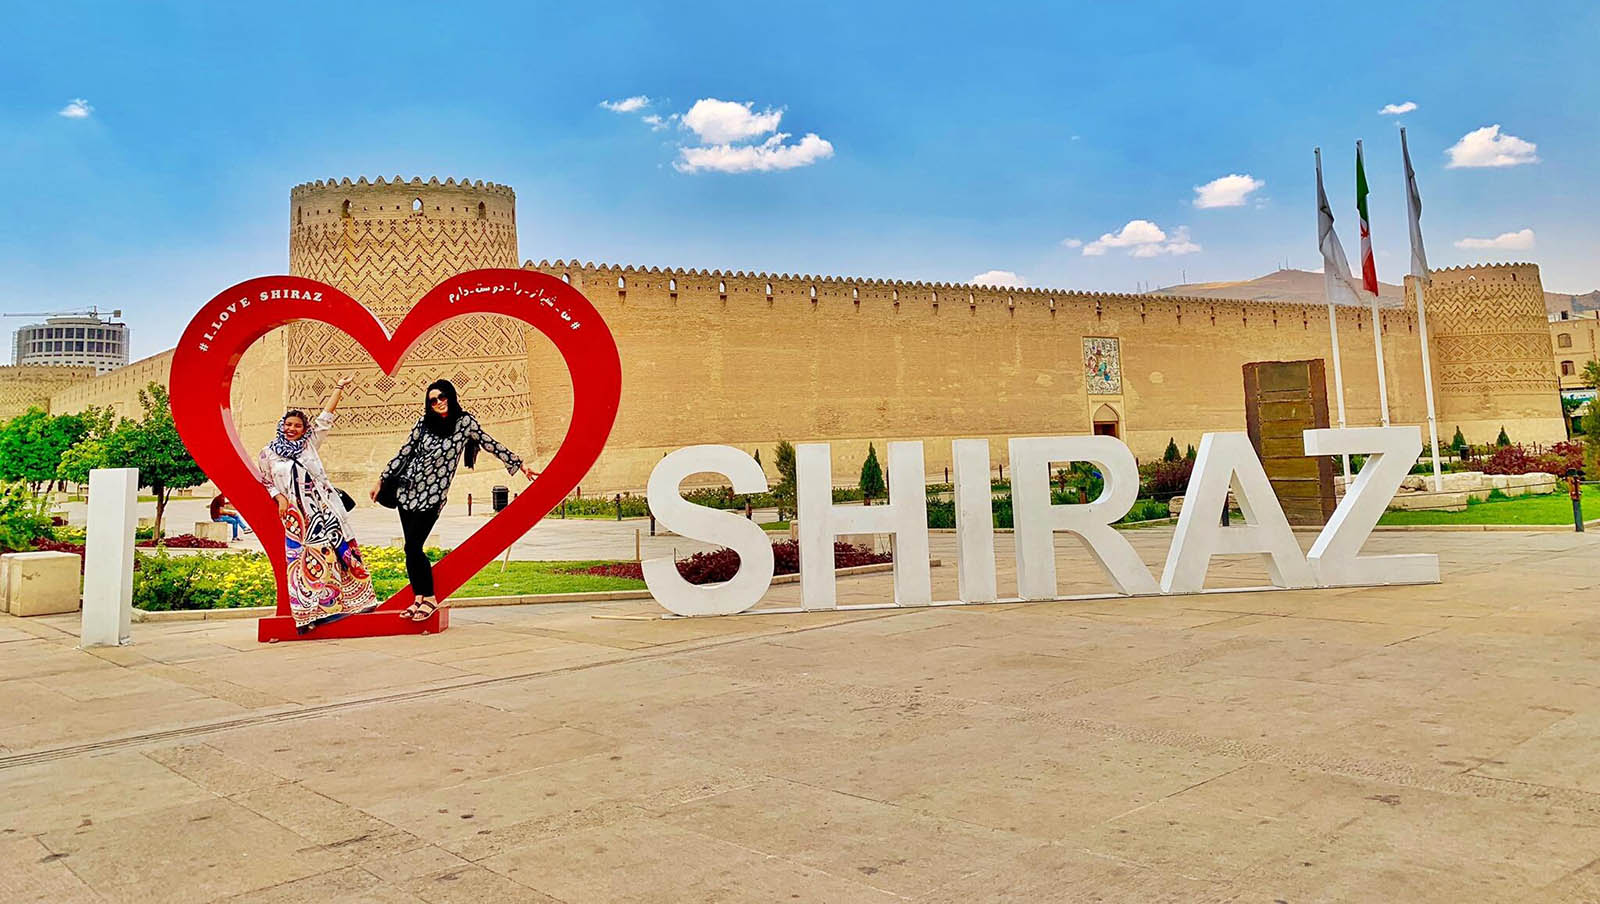 روز شیراز | 15 اردیبهشت روز بزرگداشت شهر رازها و بهارنارنج